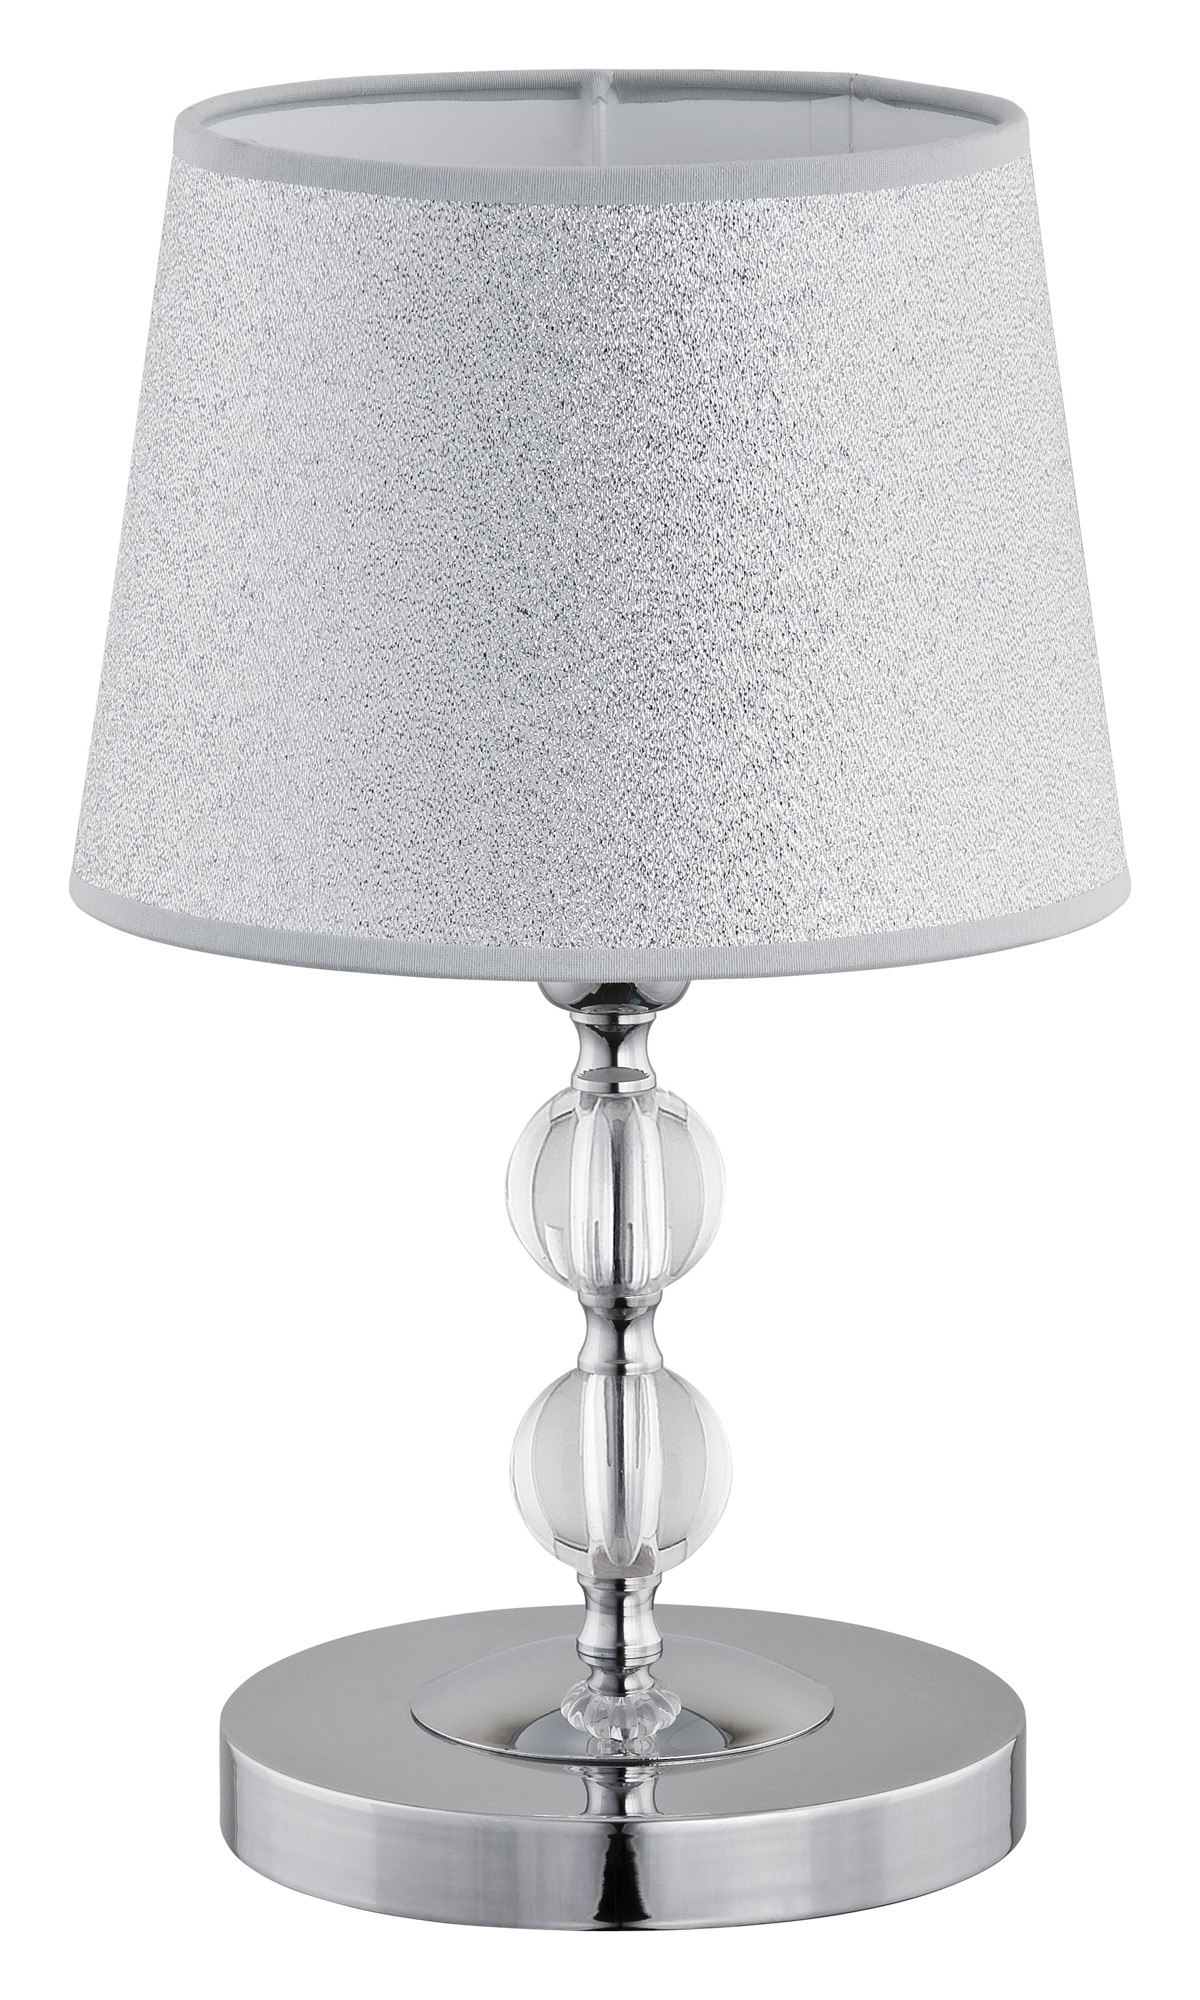 Lampa stołowa Alfa Emmanuelle 16716 1x40W E14 srebrna   - wysyłka w 24h